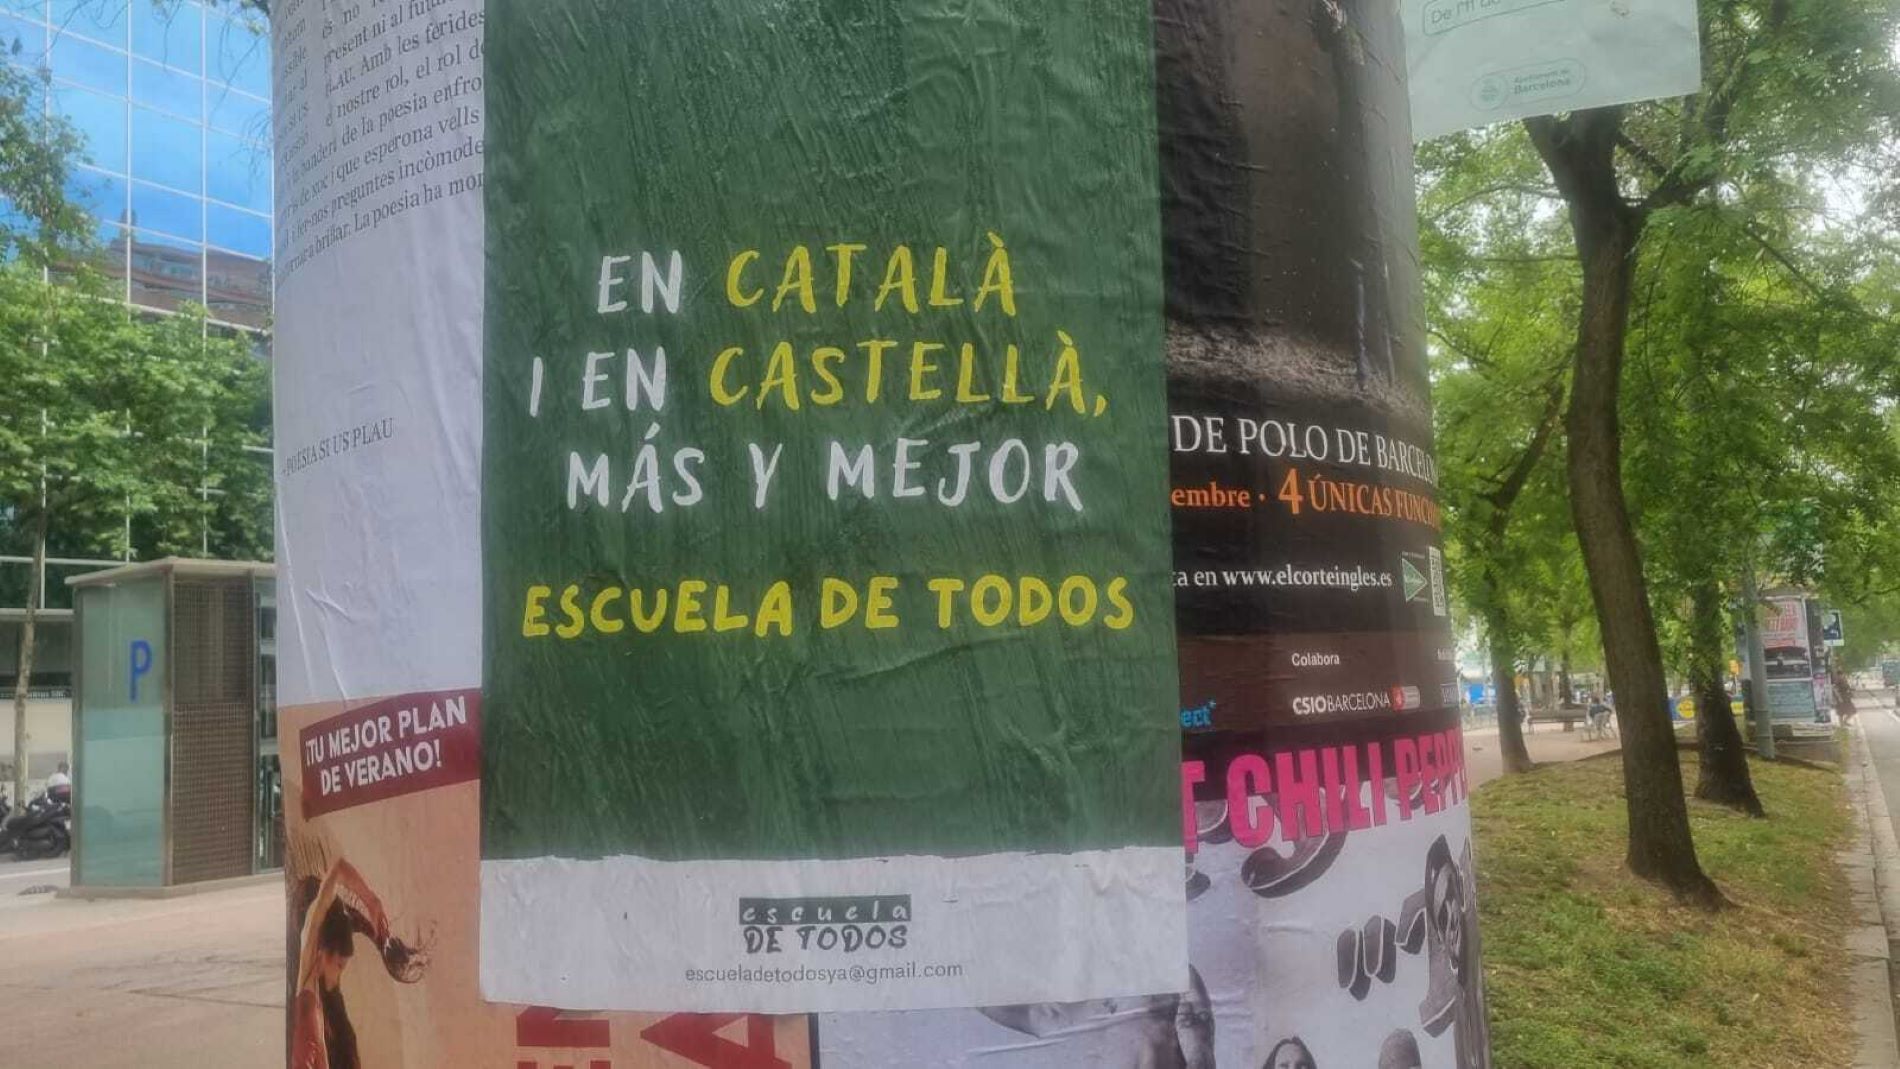 Cartel sobre castellano y catalán, Escuela de Todos